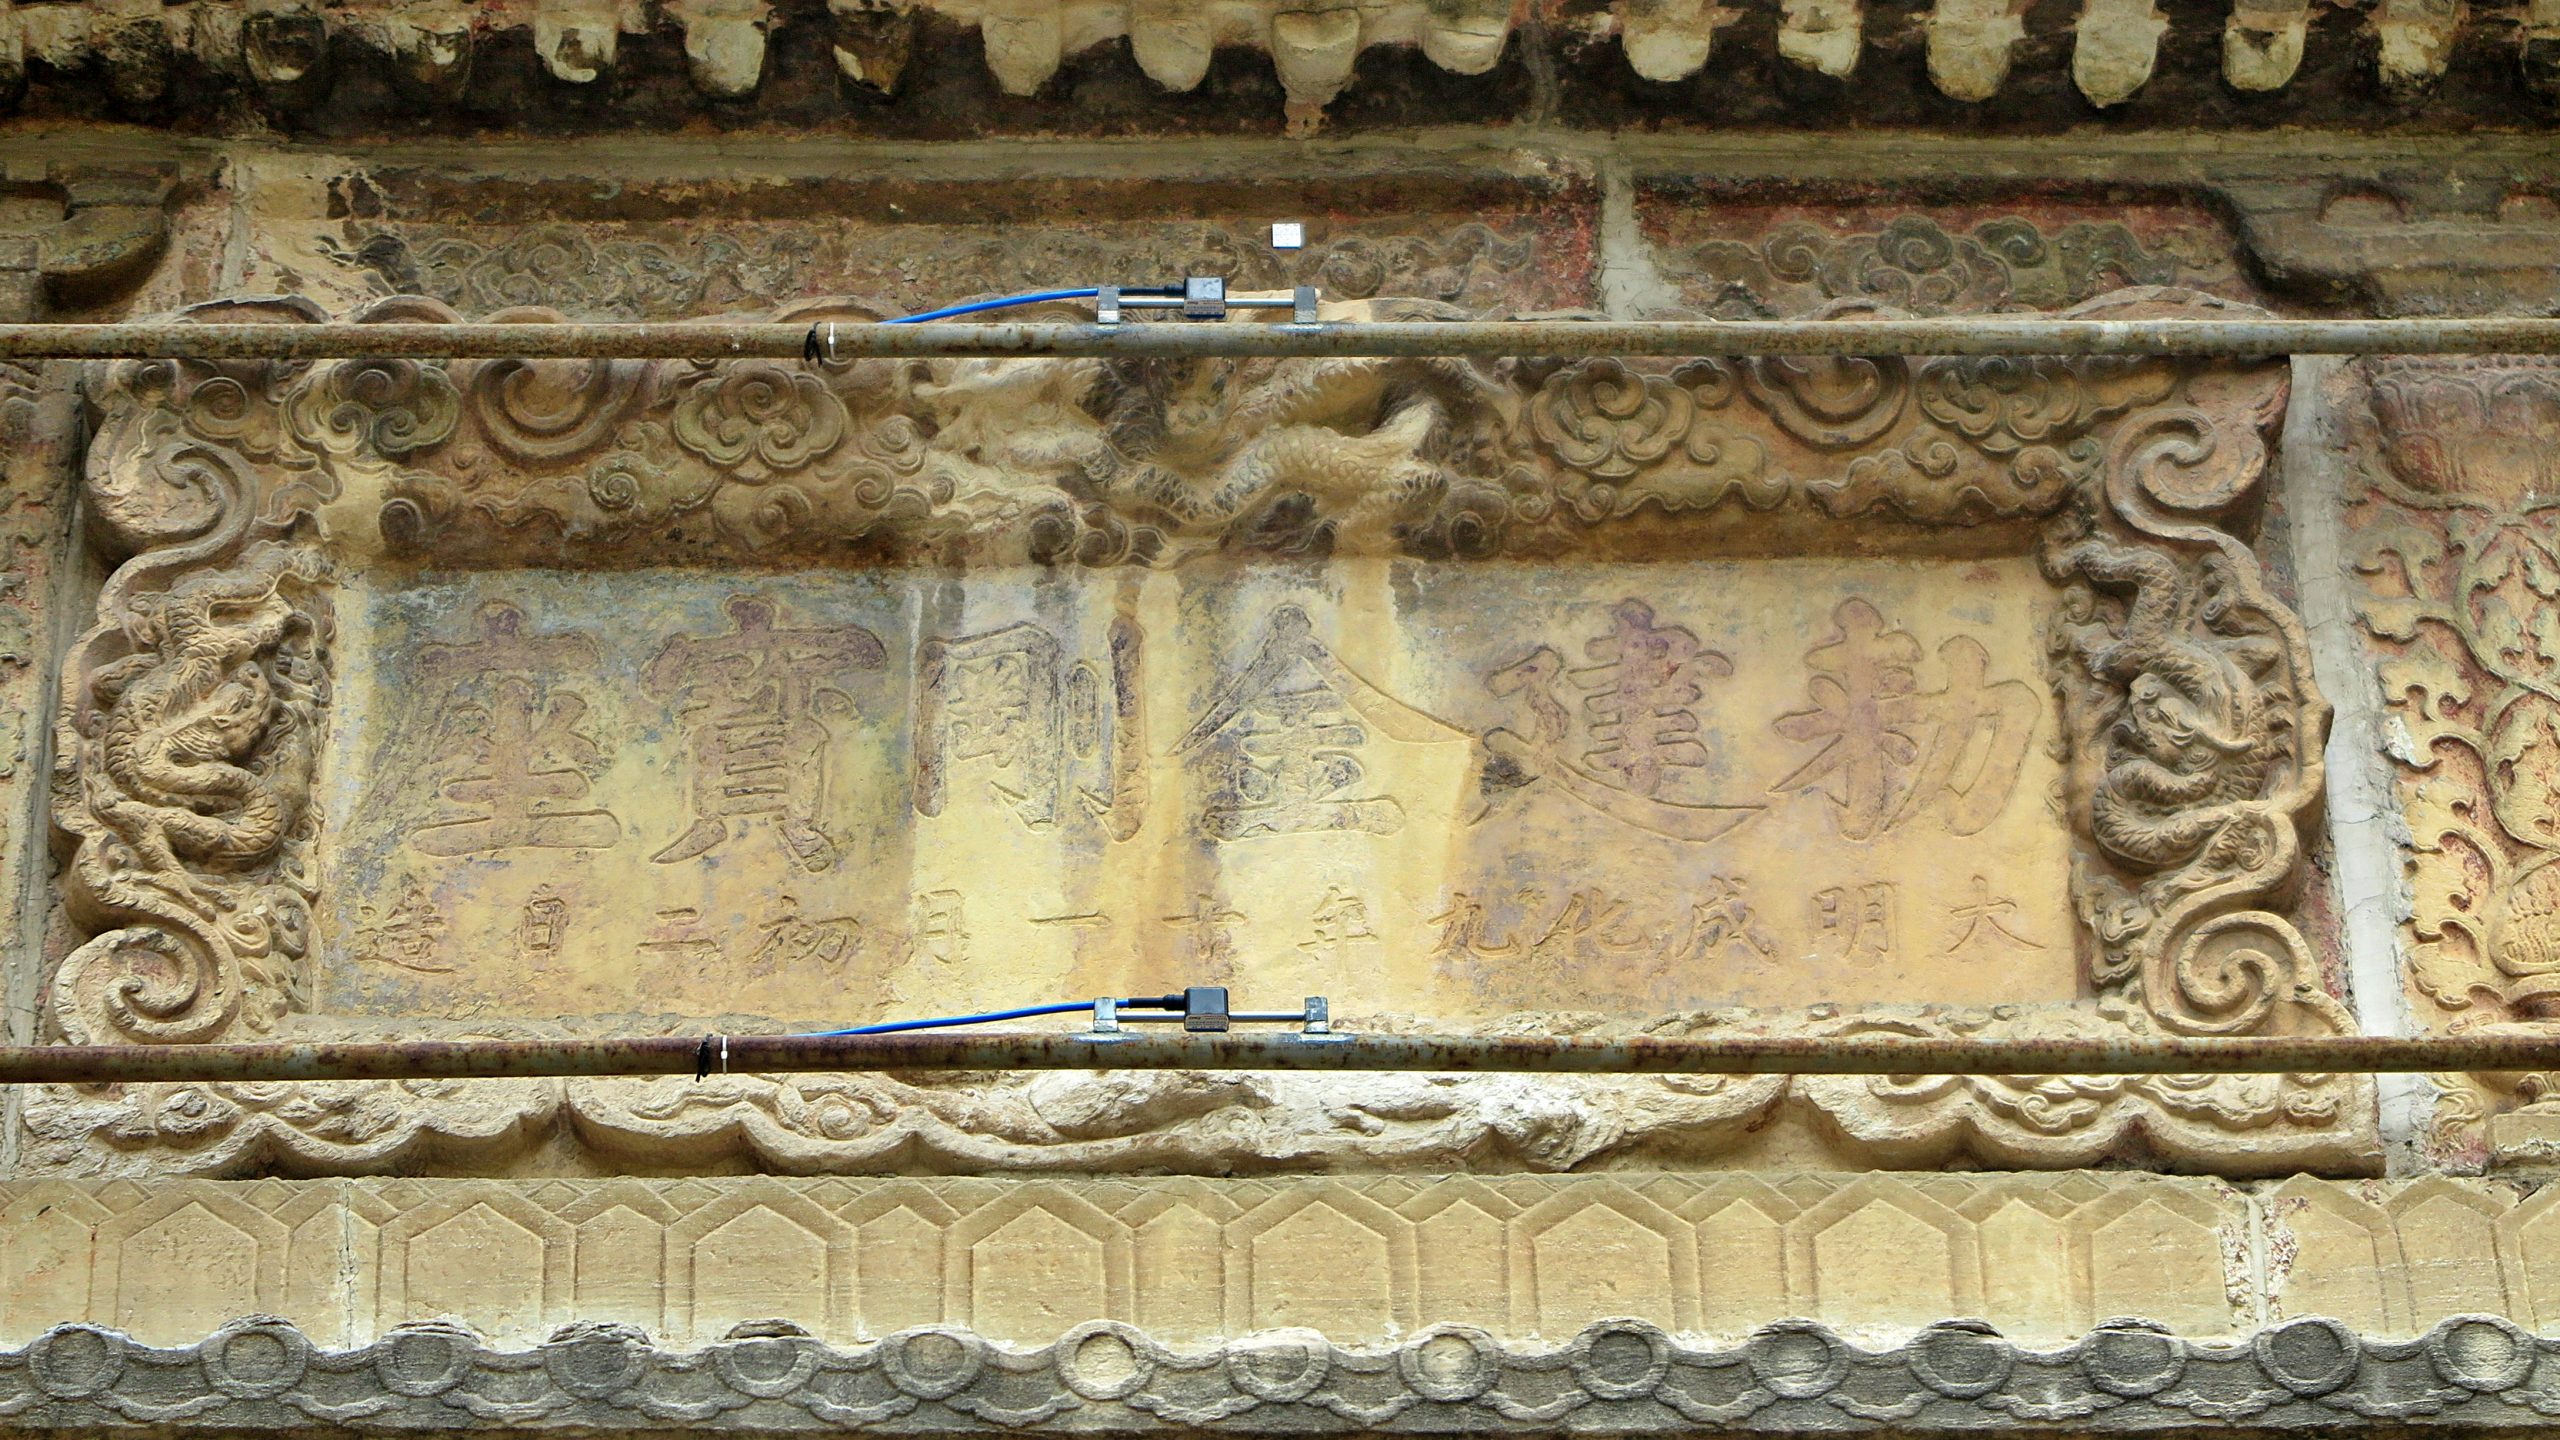 南面券门之上嵌有“敕建金刚宝座、大明成化九年十一月初二日造”铭刻的石匾额。